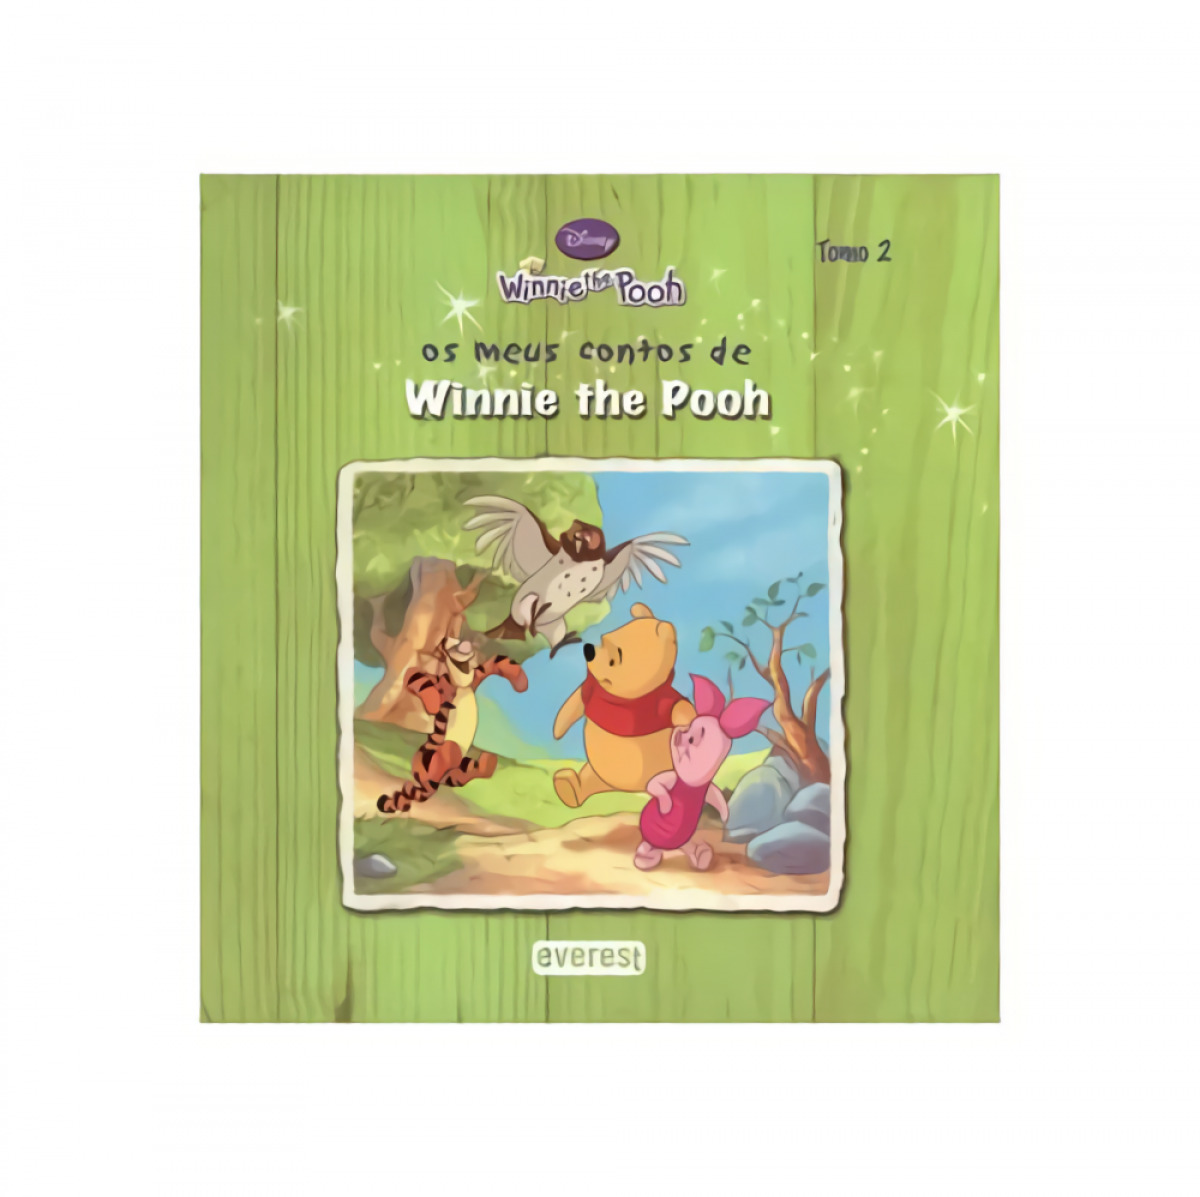 Os meus contos de winnie the pooh: tomo 2 - Milne, A. A./Shepard, E. H.